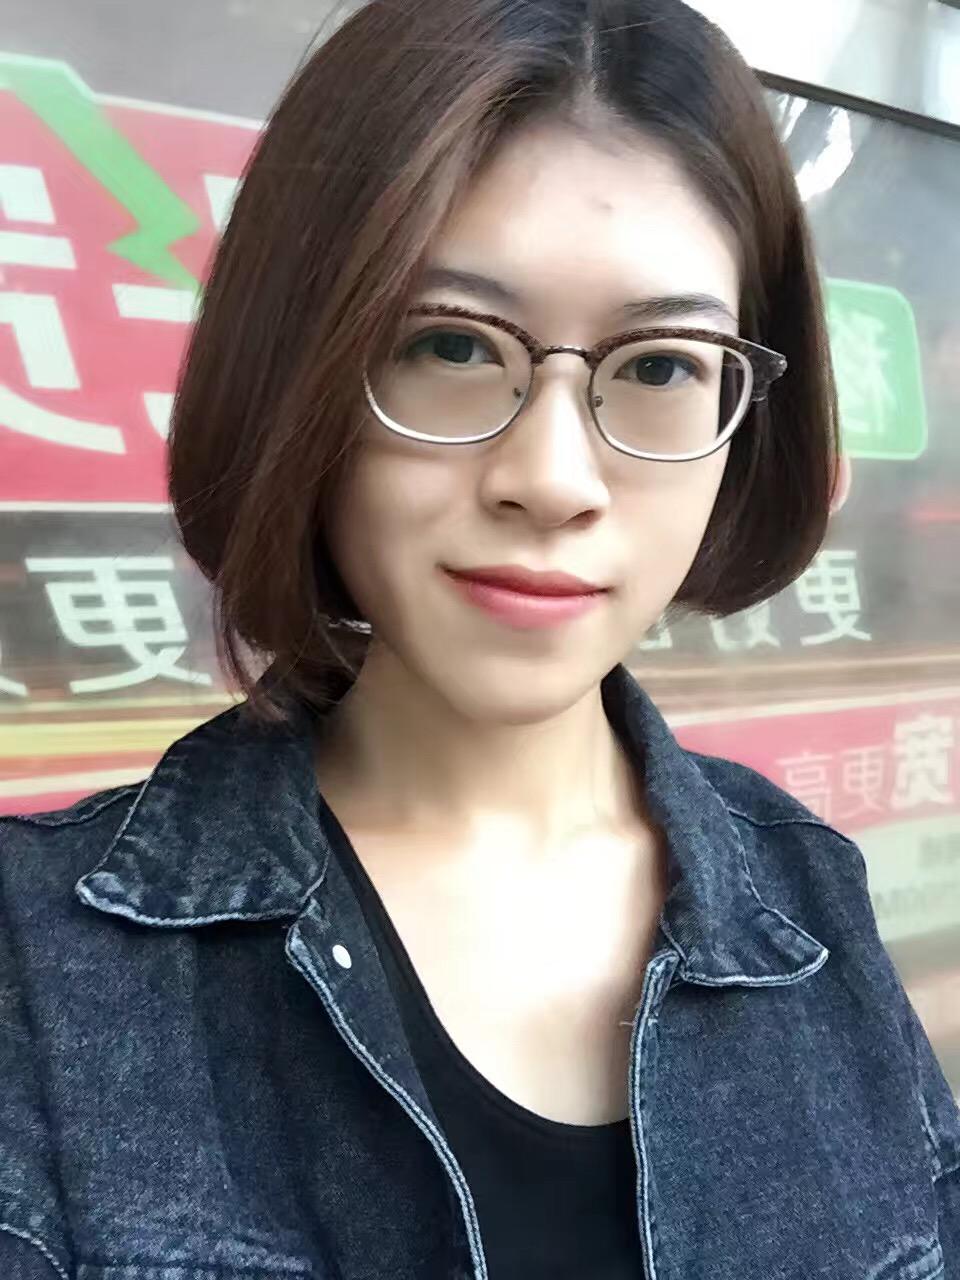 戴眼镜的女生适合哪种短发发型